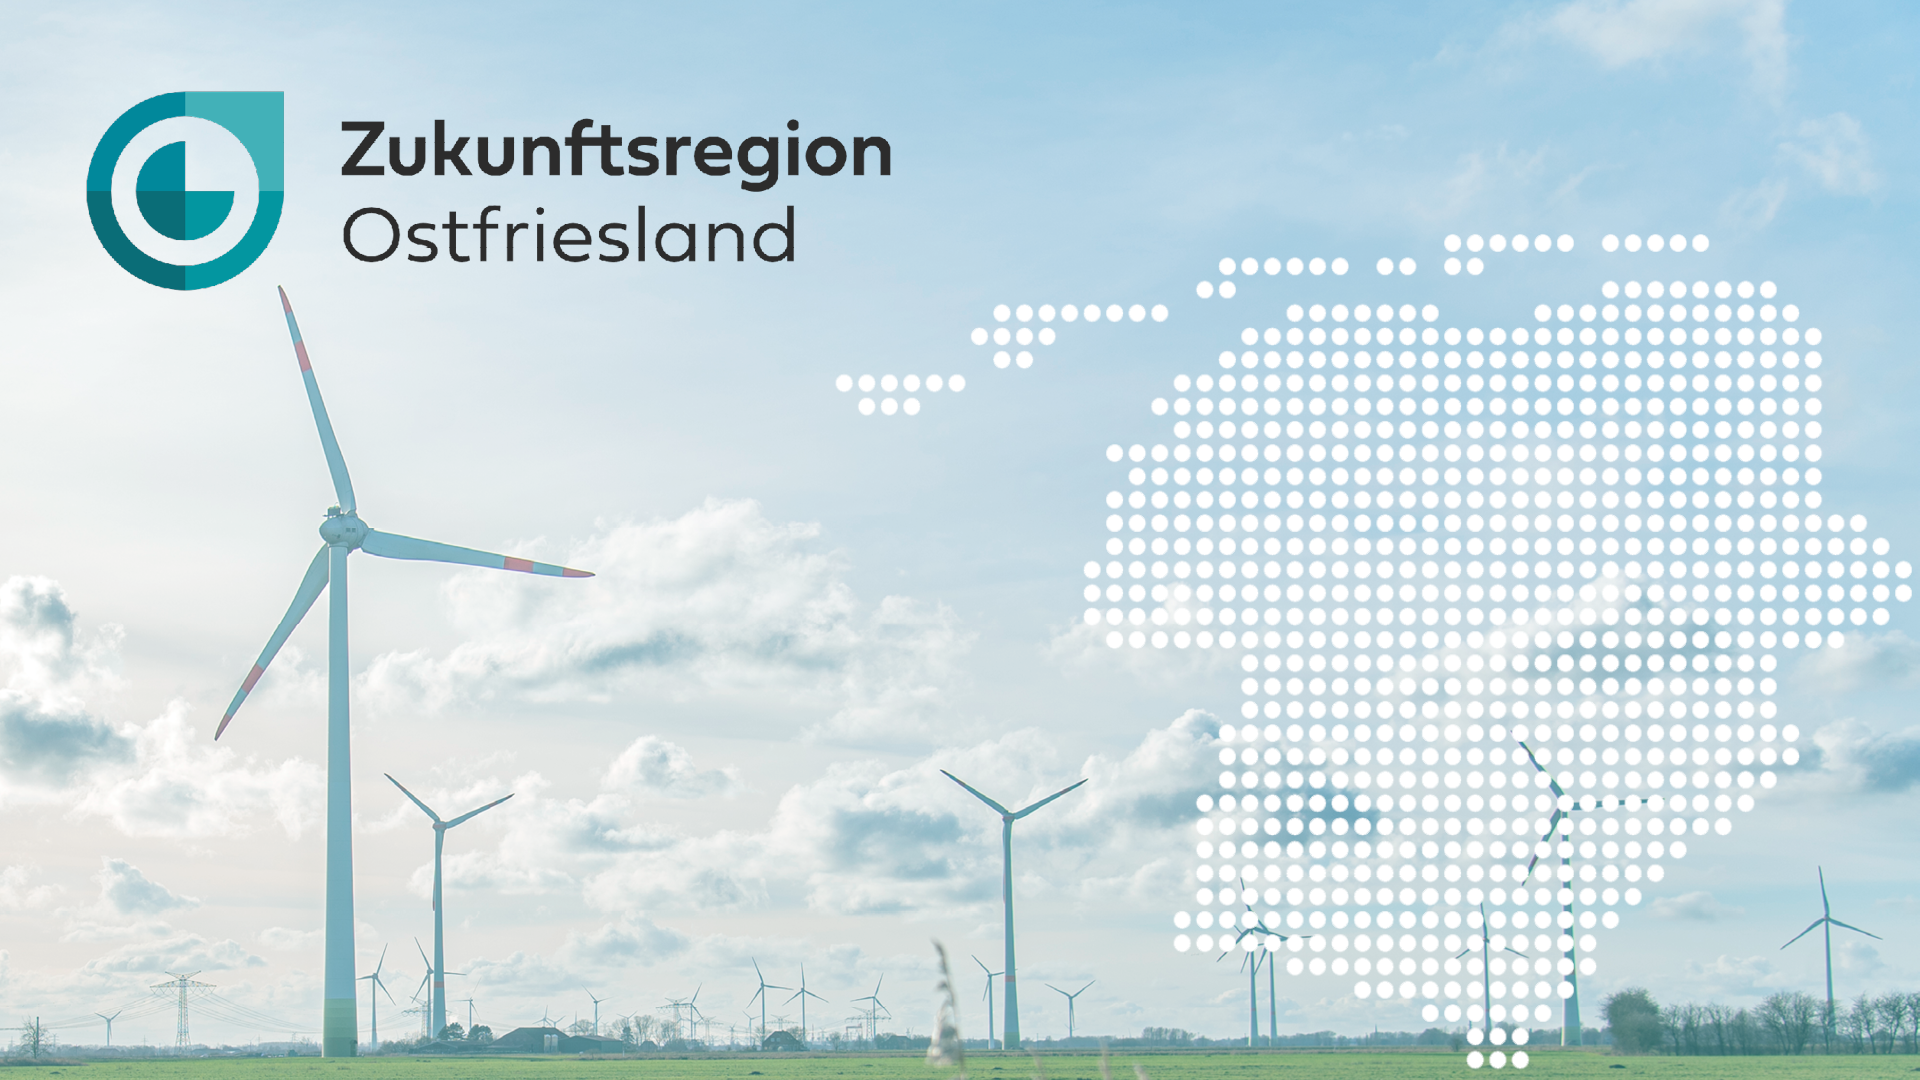 Landschaftsbild mit Windkraftanlagen. Darüber befindet sich das Logo der Zukunftsregion Ostfriesland und eine stilisierte Karte der Region.